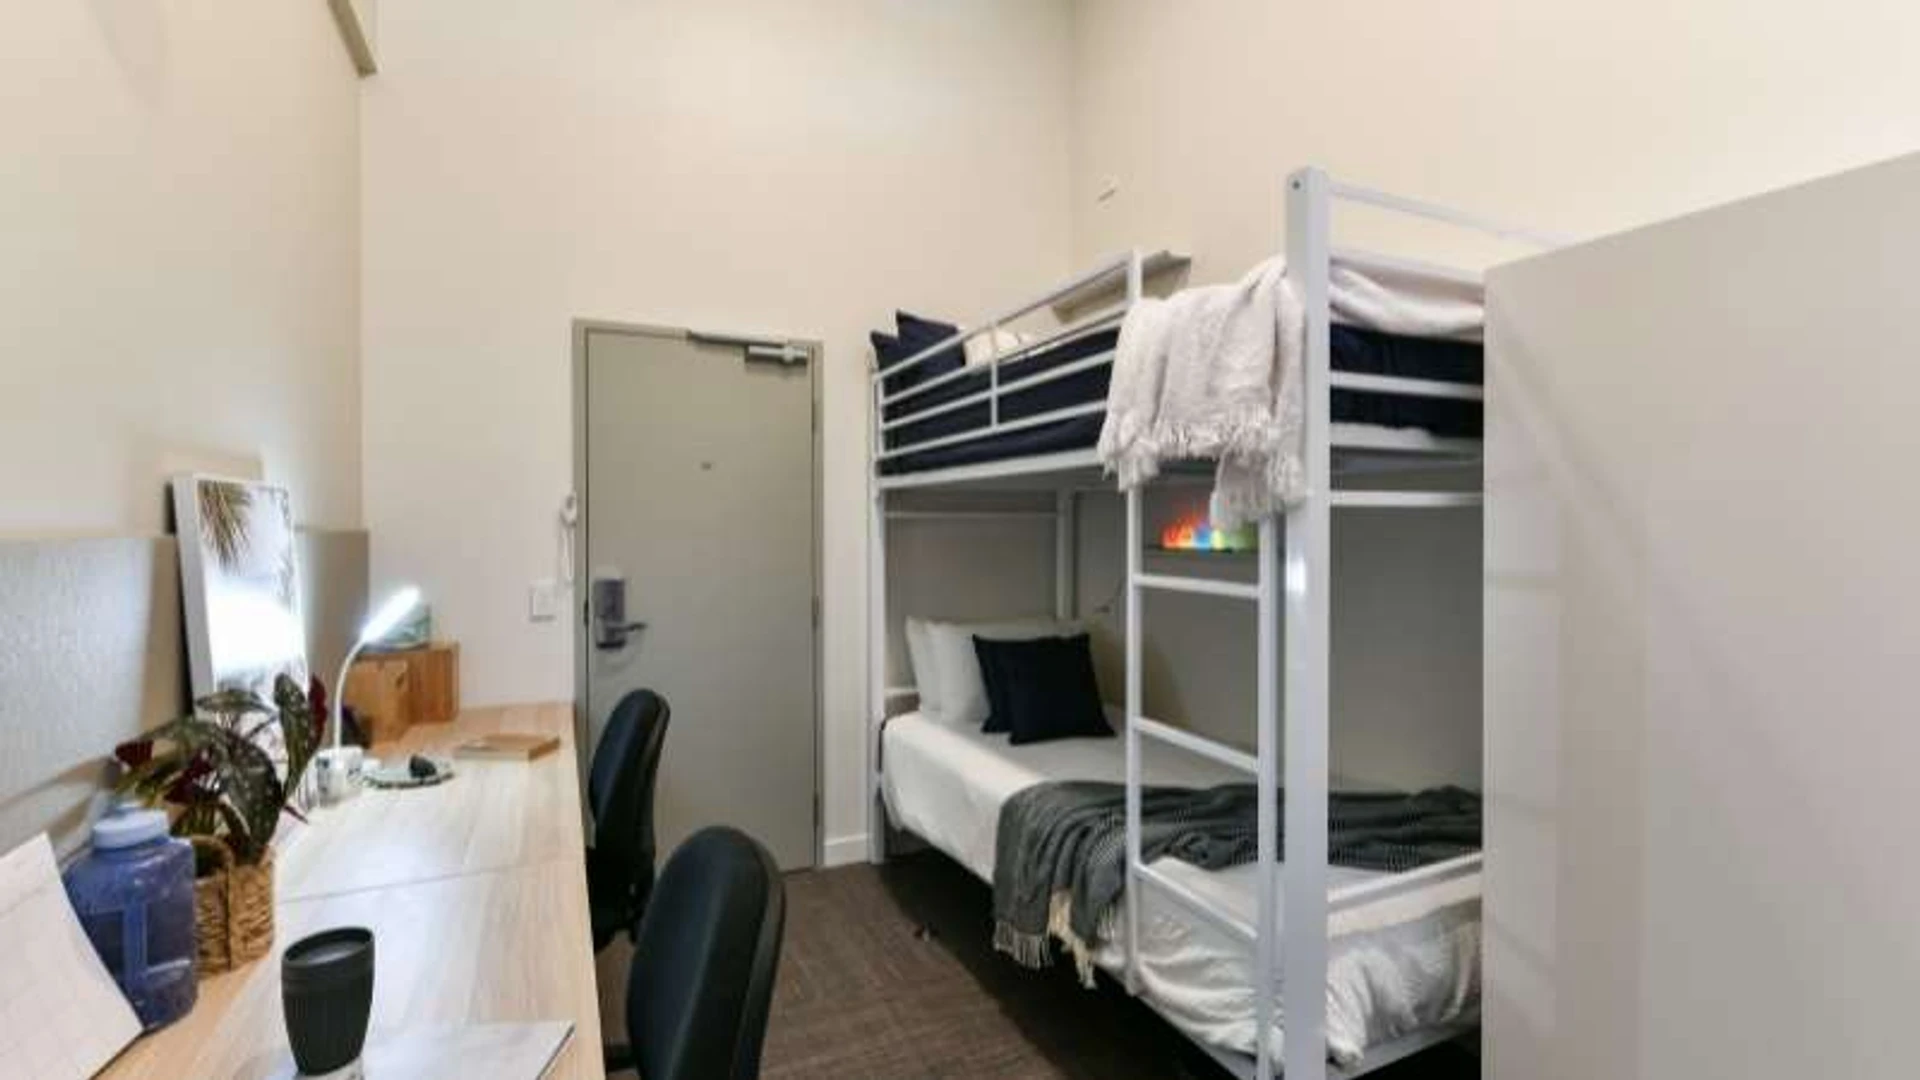 Alquiler de habitación en piso compartido en Brisbane